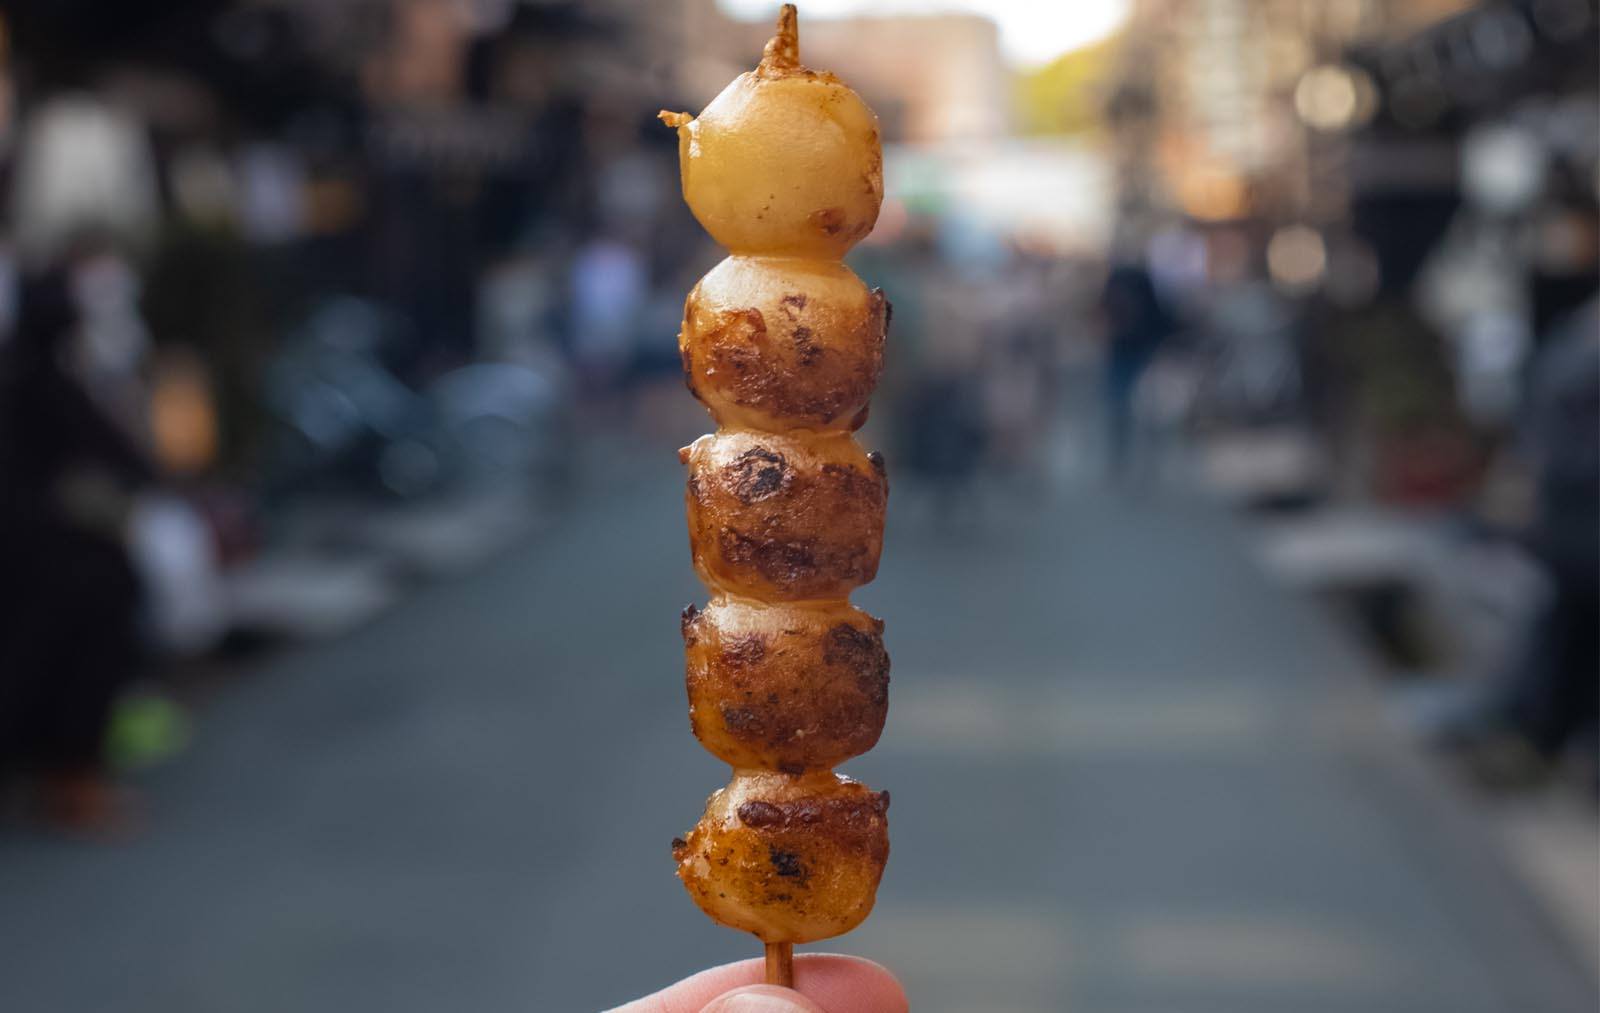 Mitarashi-dango street food skewers popular in Osaka, Japan